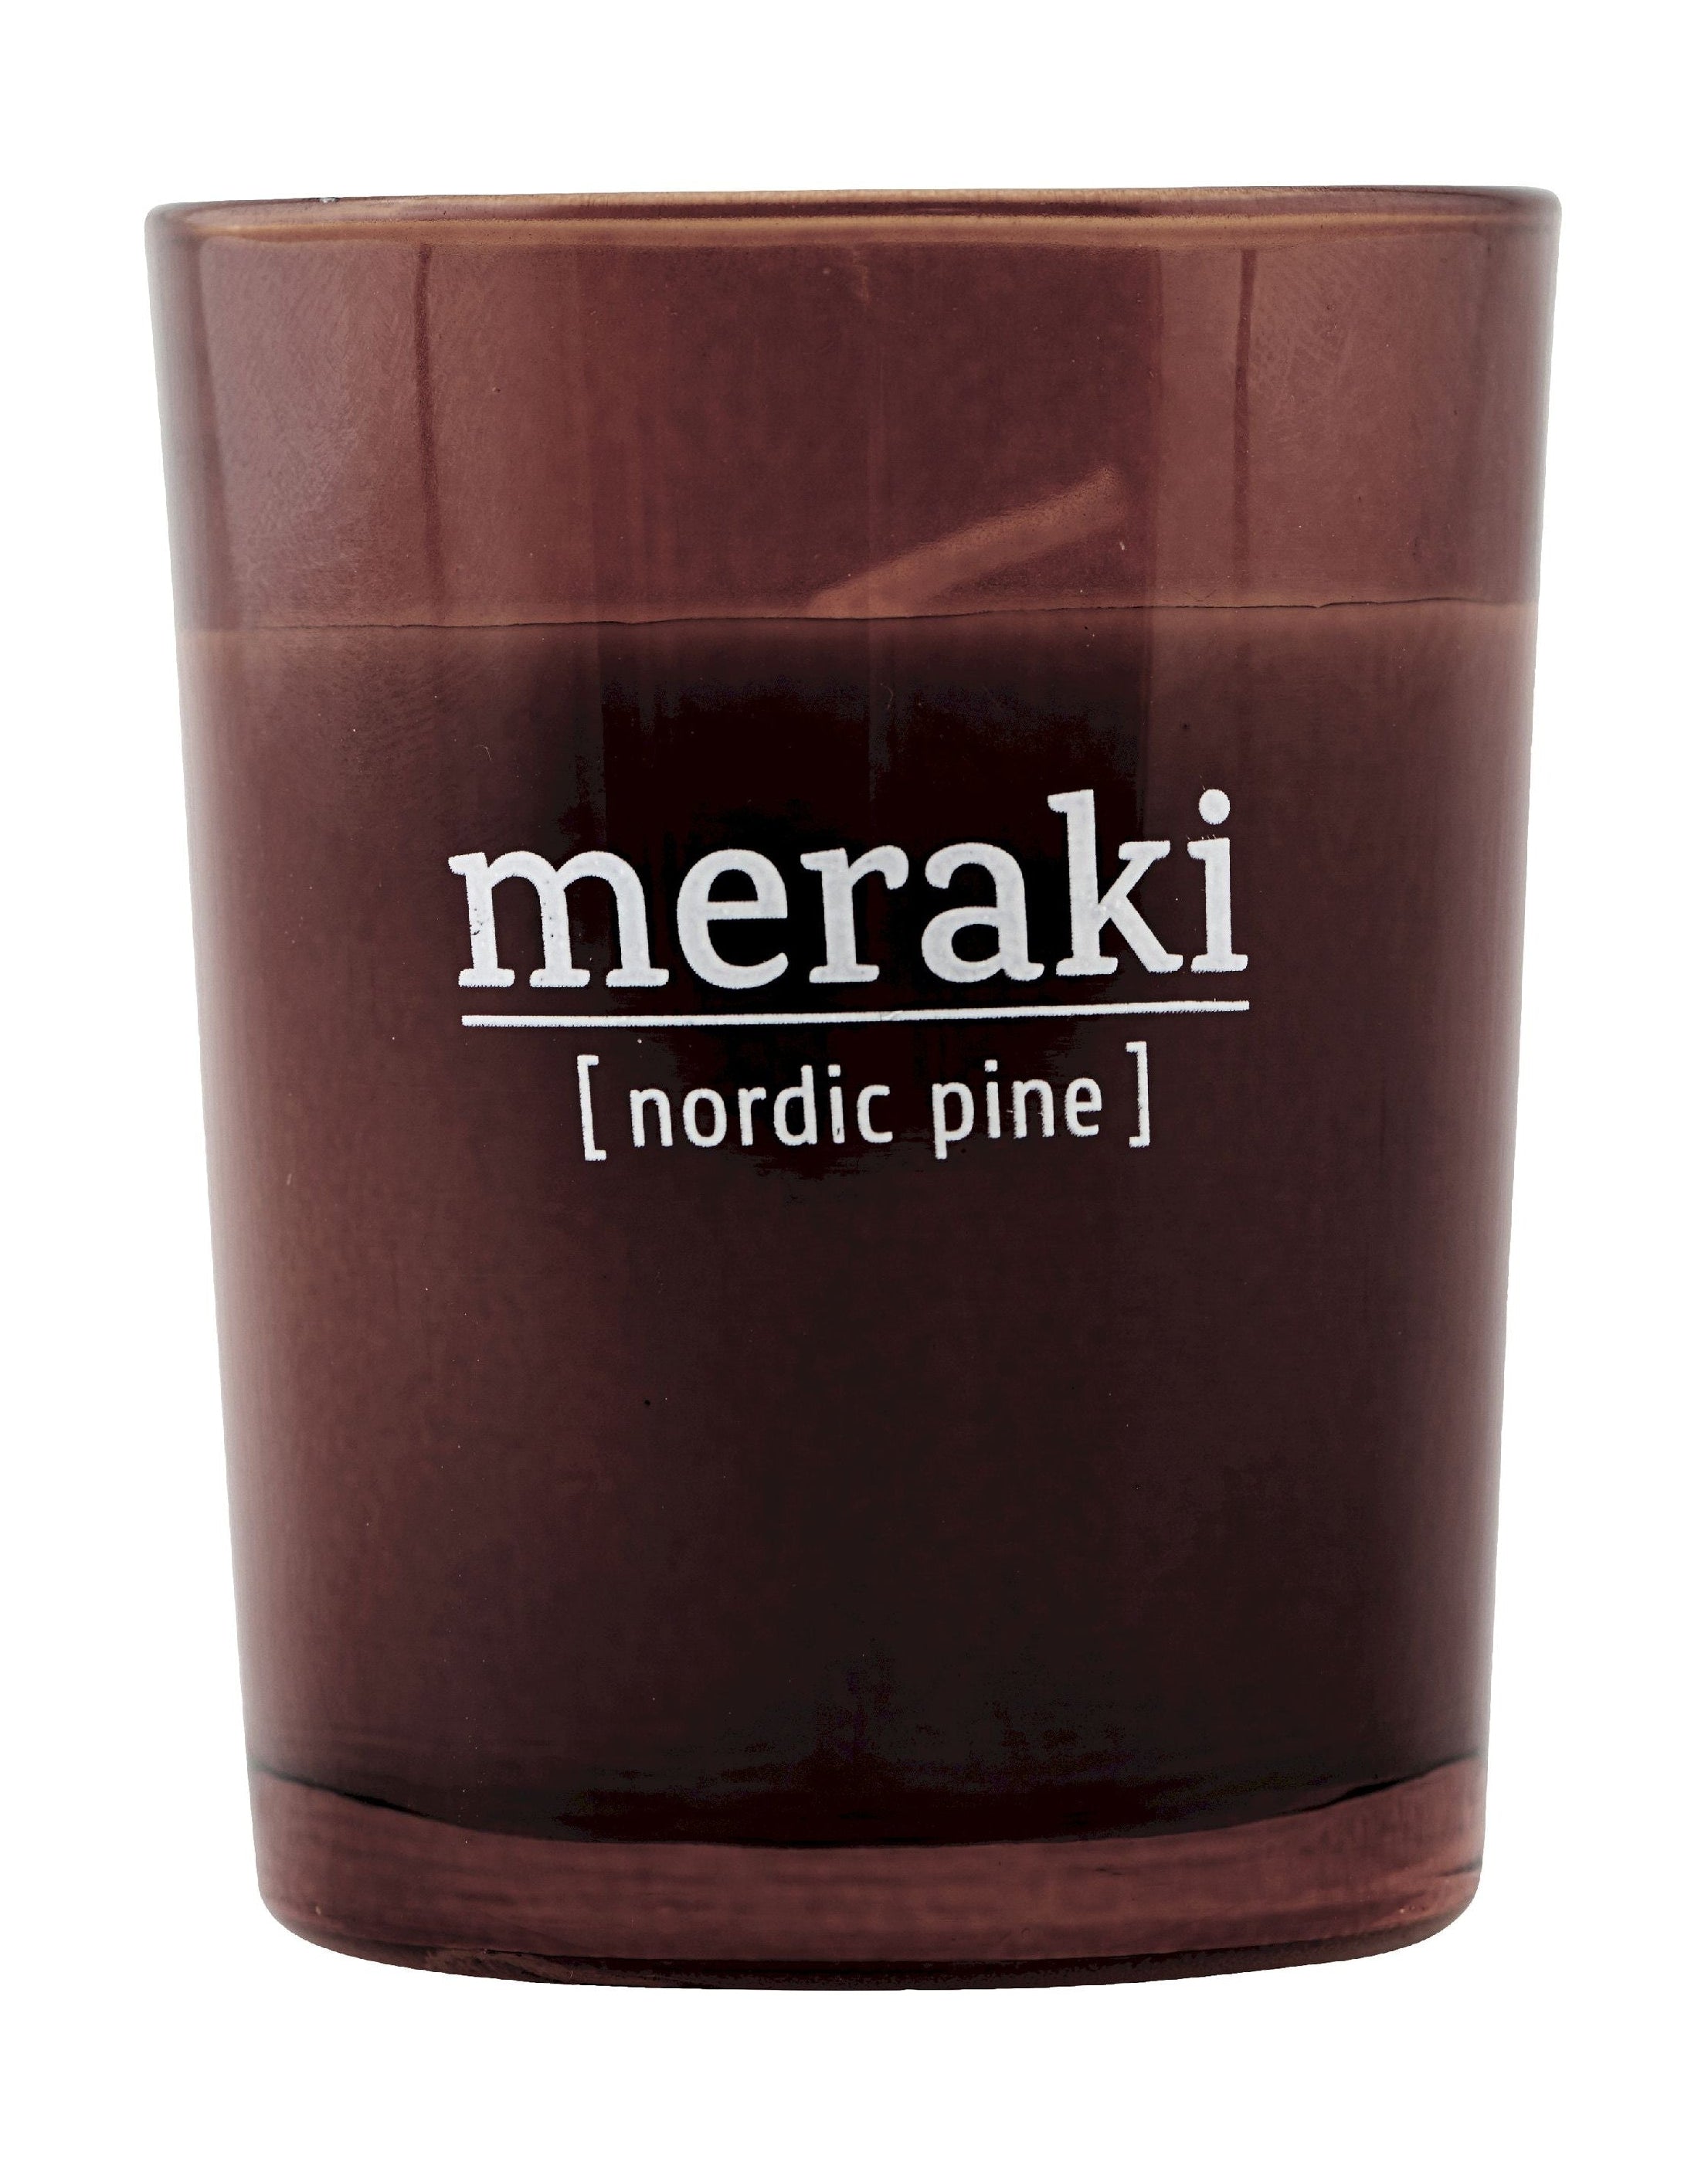 Vela perfumada de Meraki H6,7 cm, pino nórdico